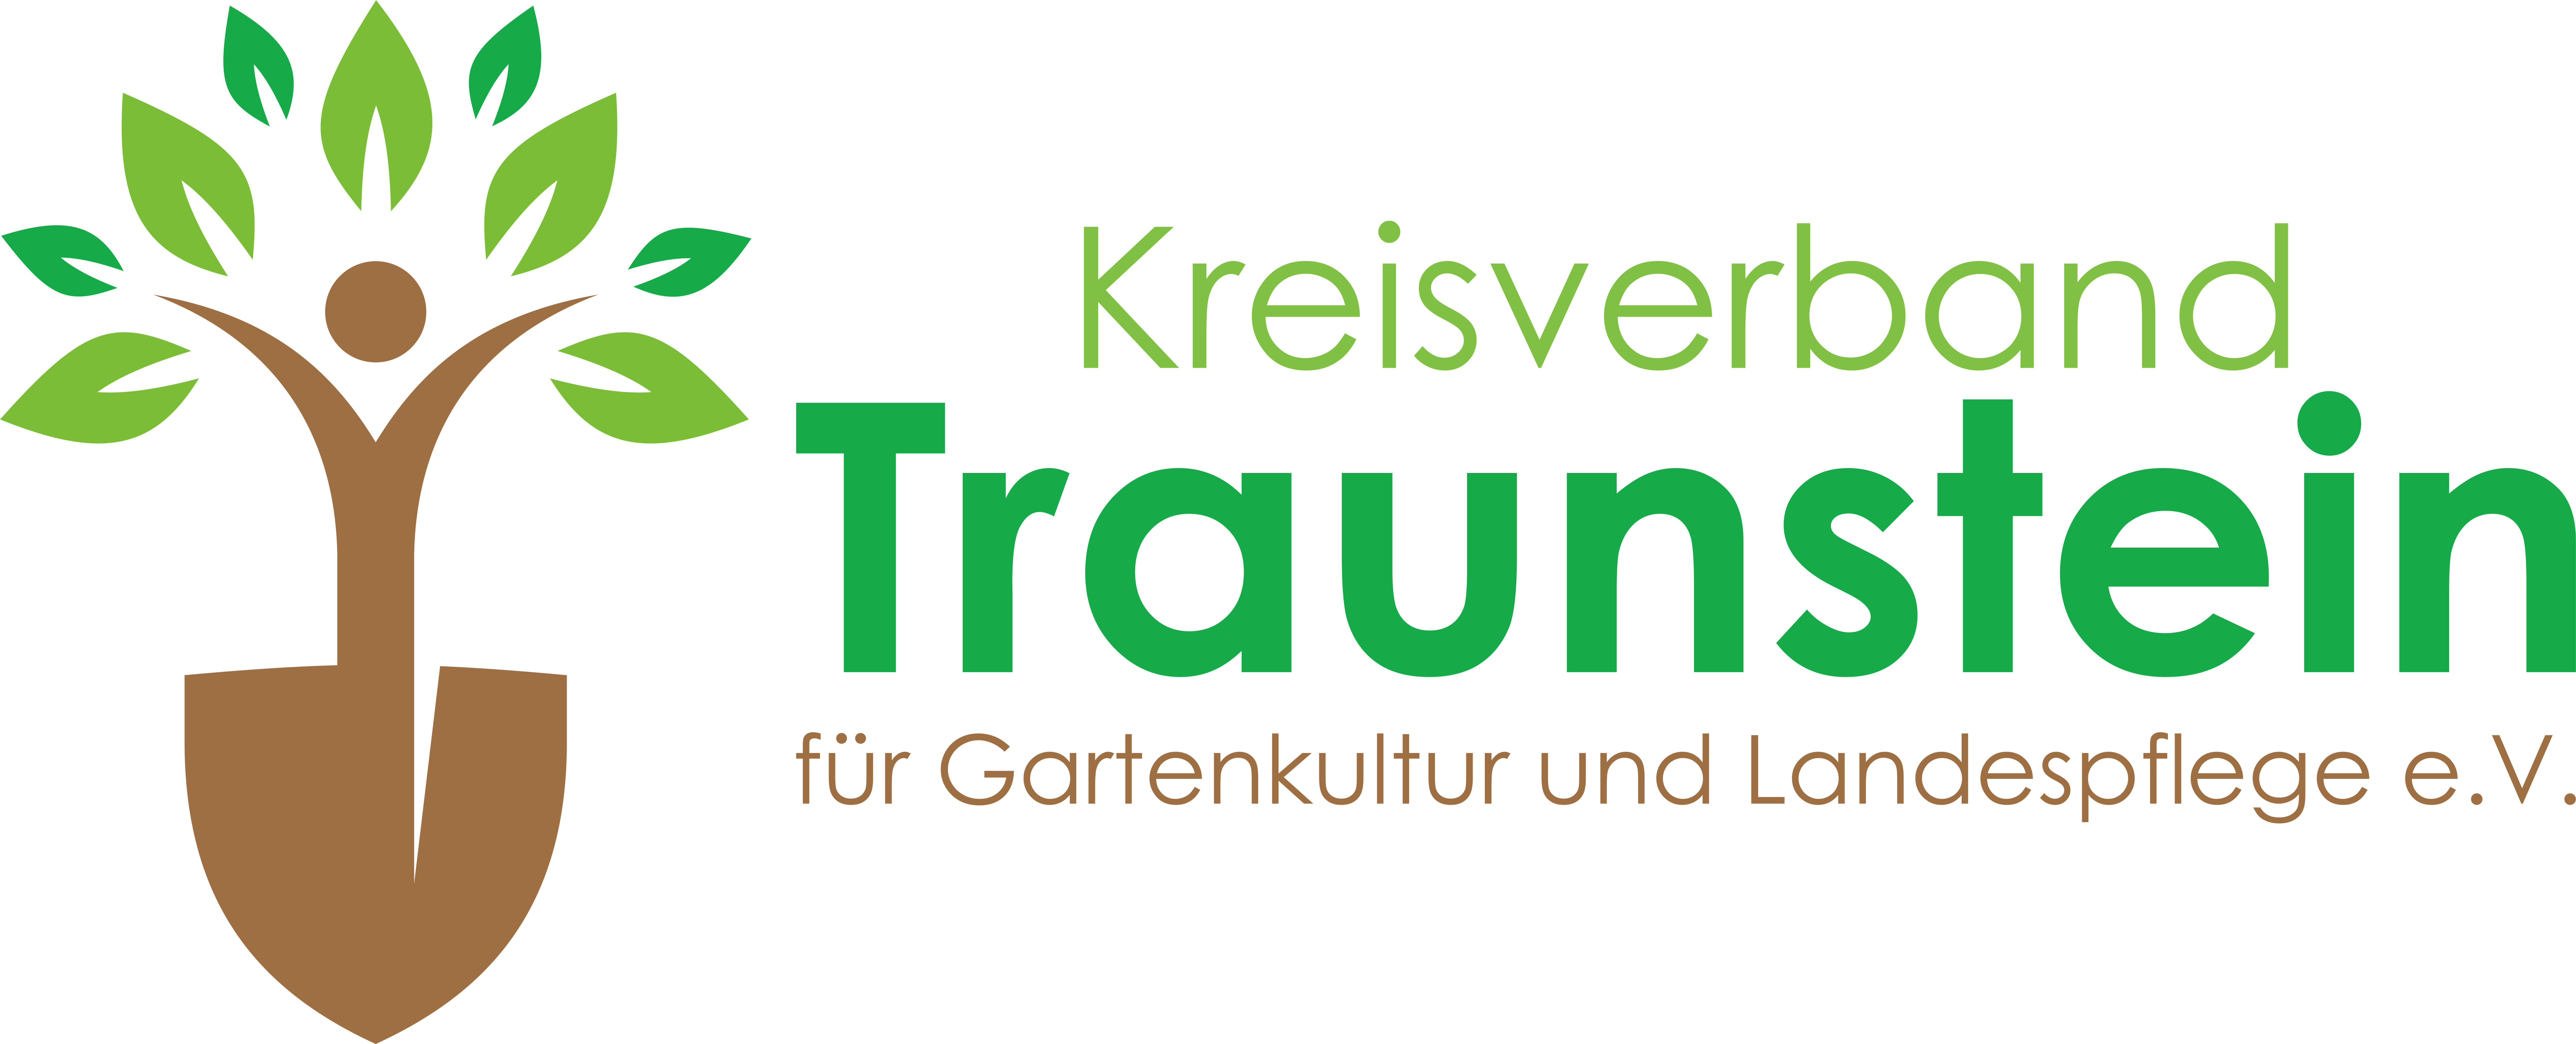 Kreisverband Traunstein für Gartenkultur und Landespflege e.V.